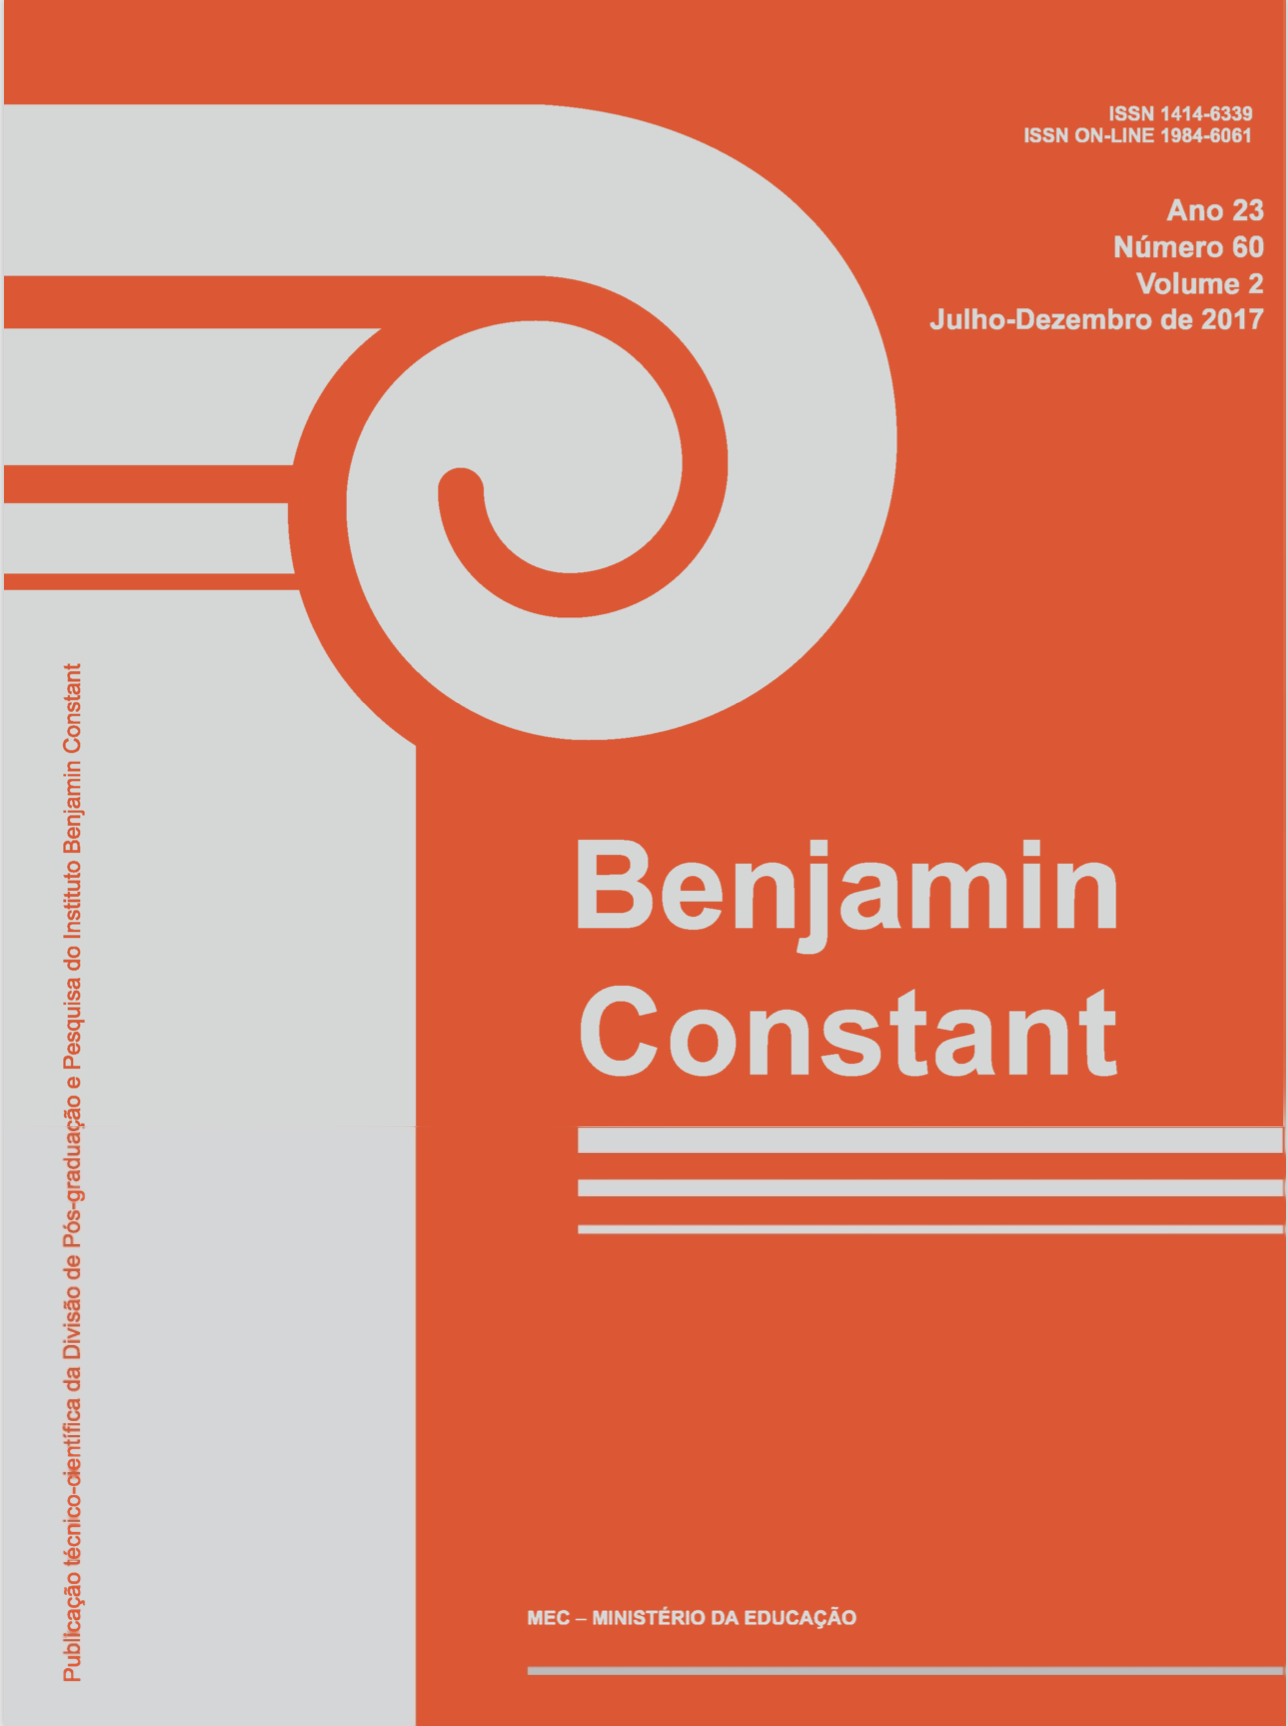 Capa da revista Benjamin Constant em cor de laranja, contendo as seguintes informações: ano 23, número 60, volume 2, julho – dezembro de 2017.